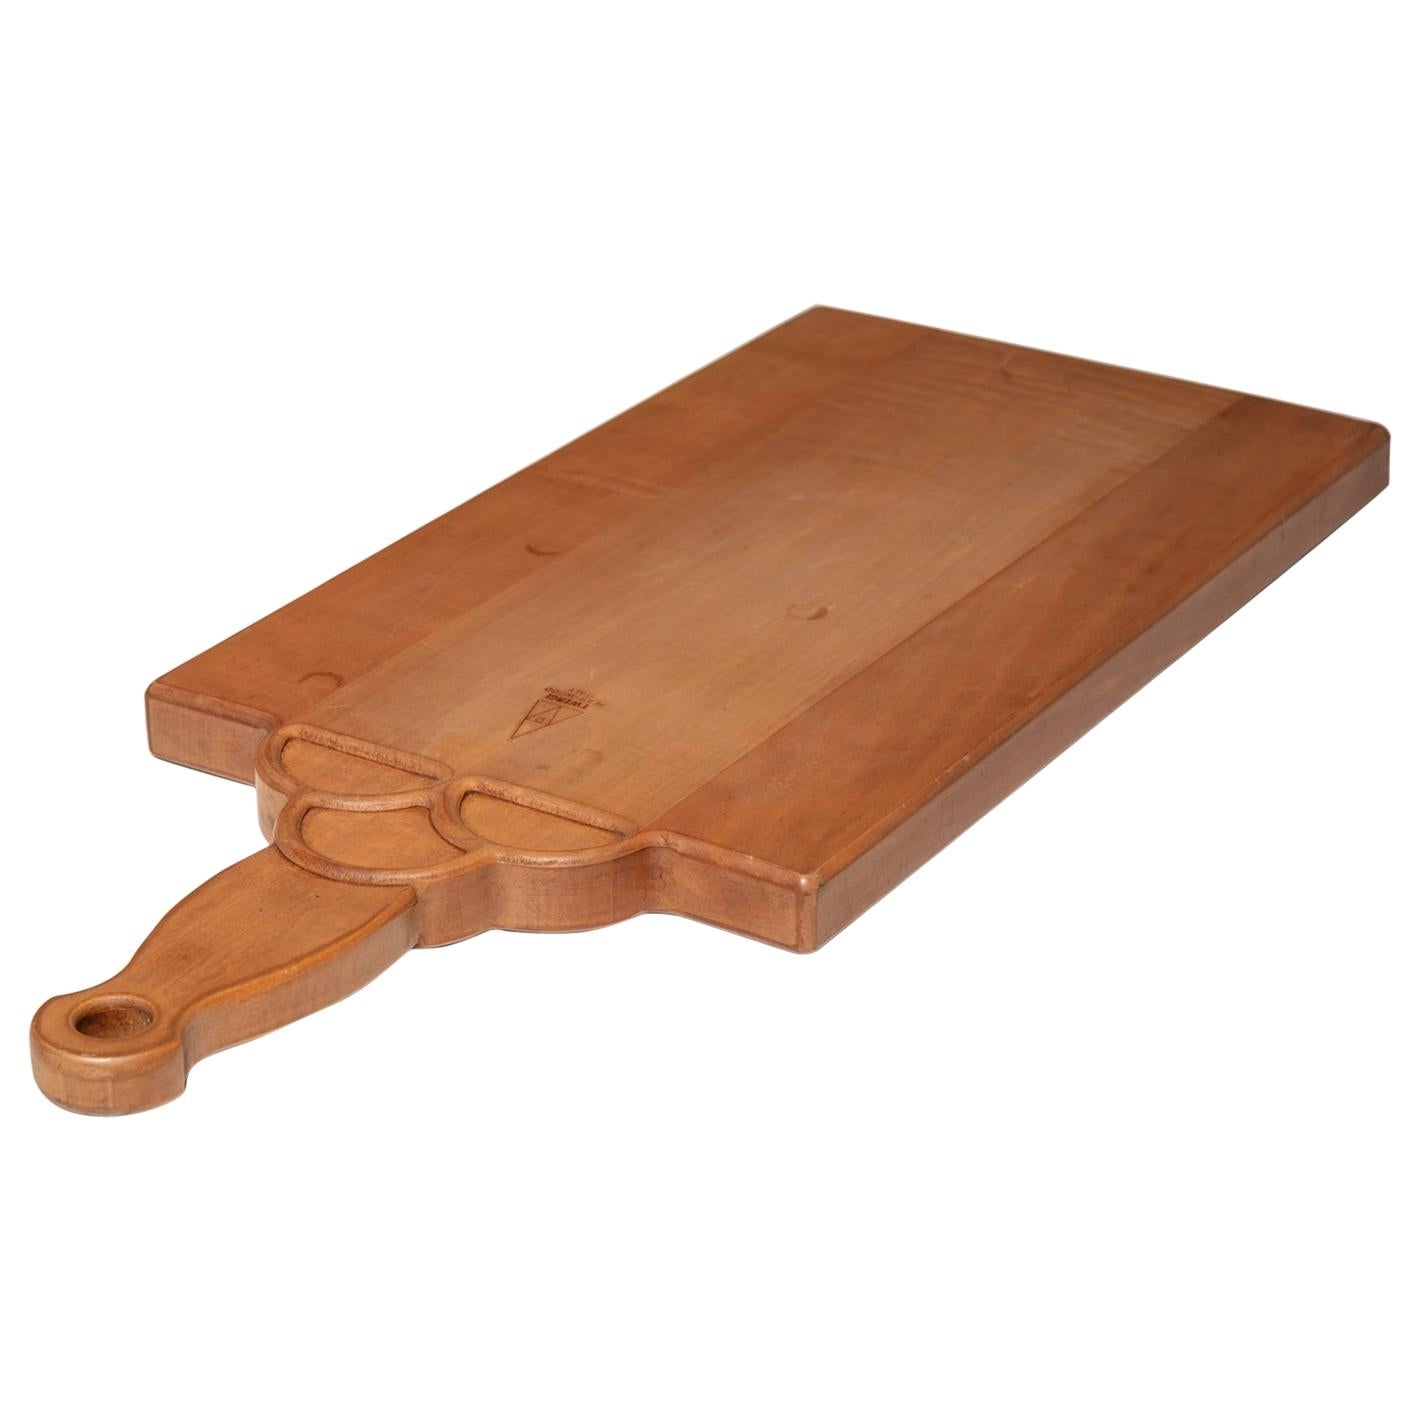 Chopping Board by Milton Glaser for Twergi / Alessi